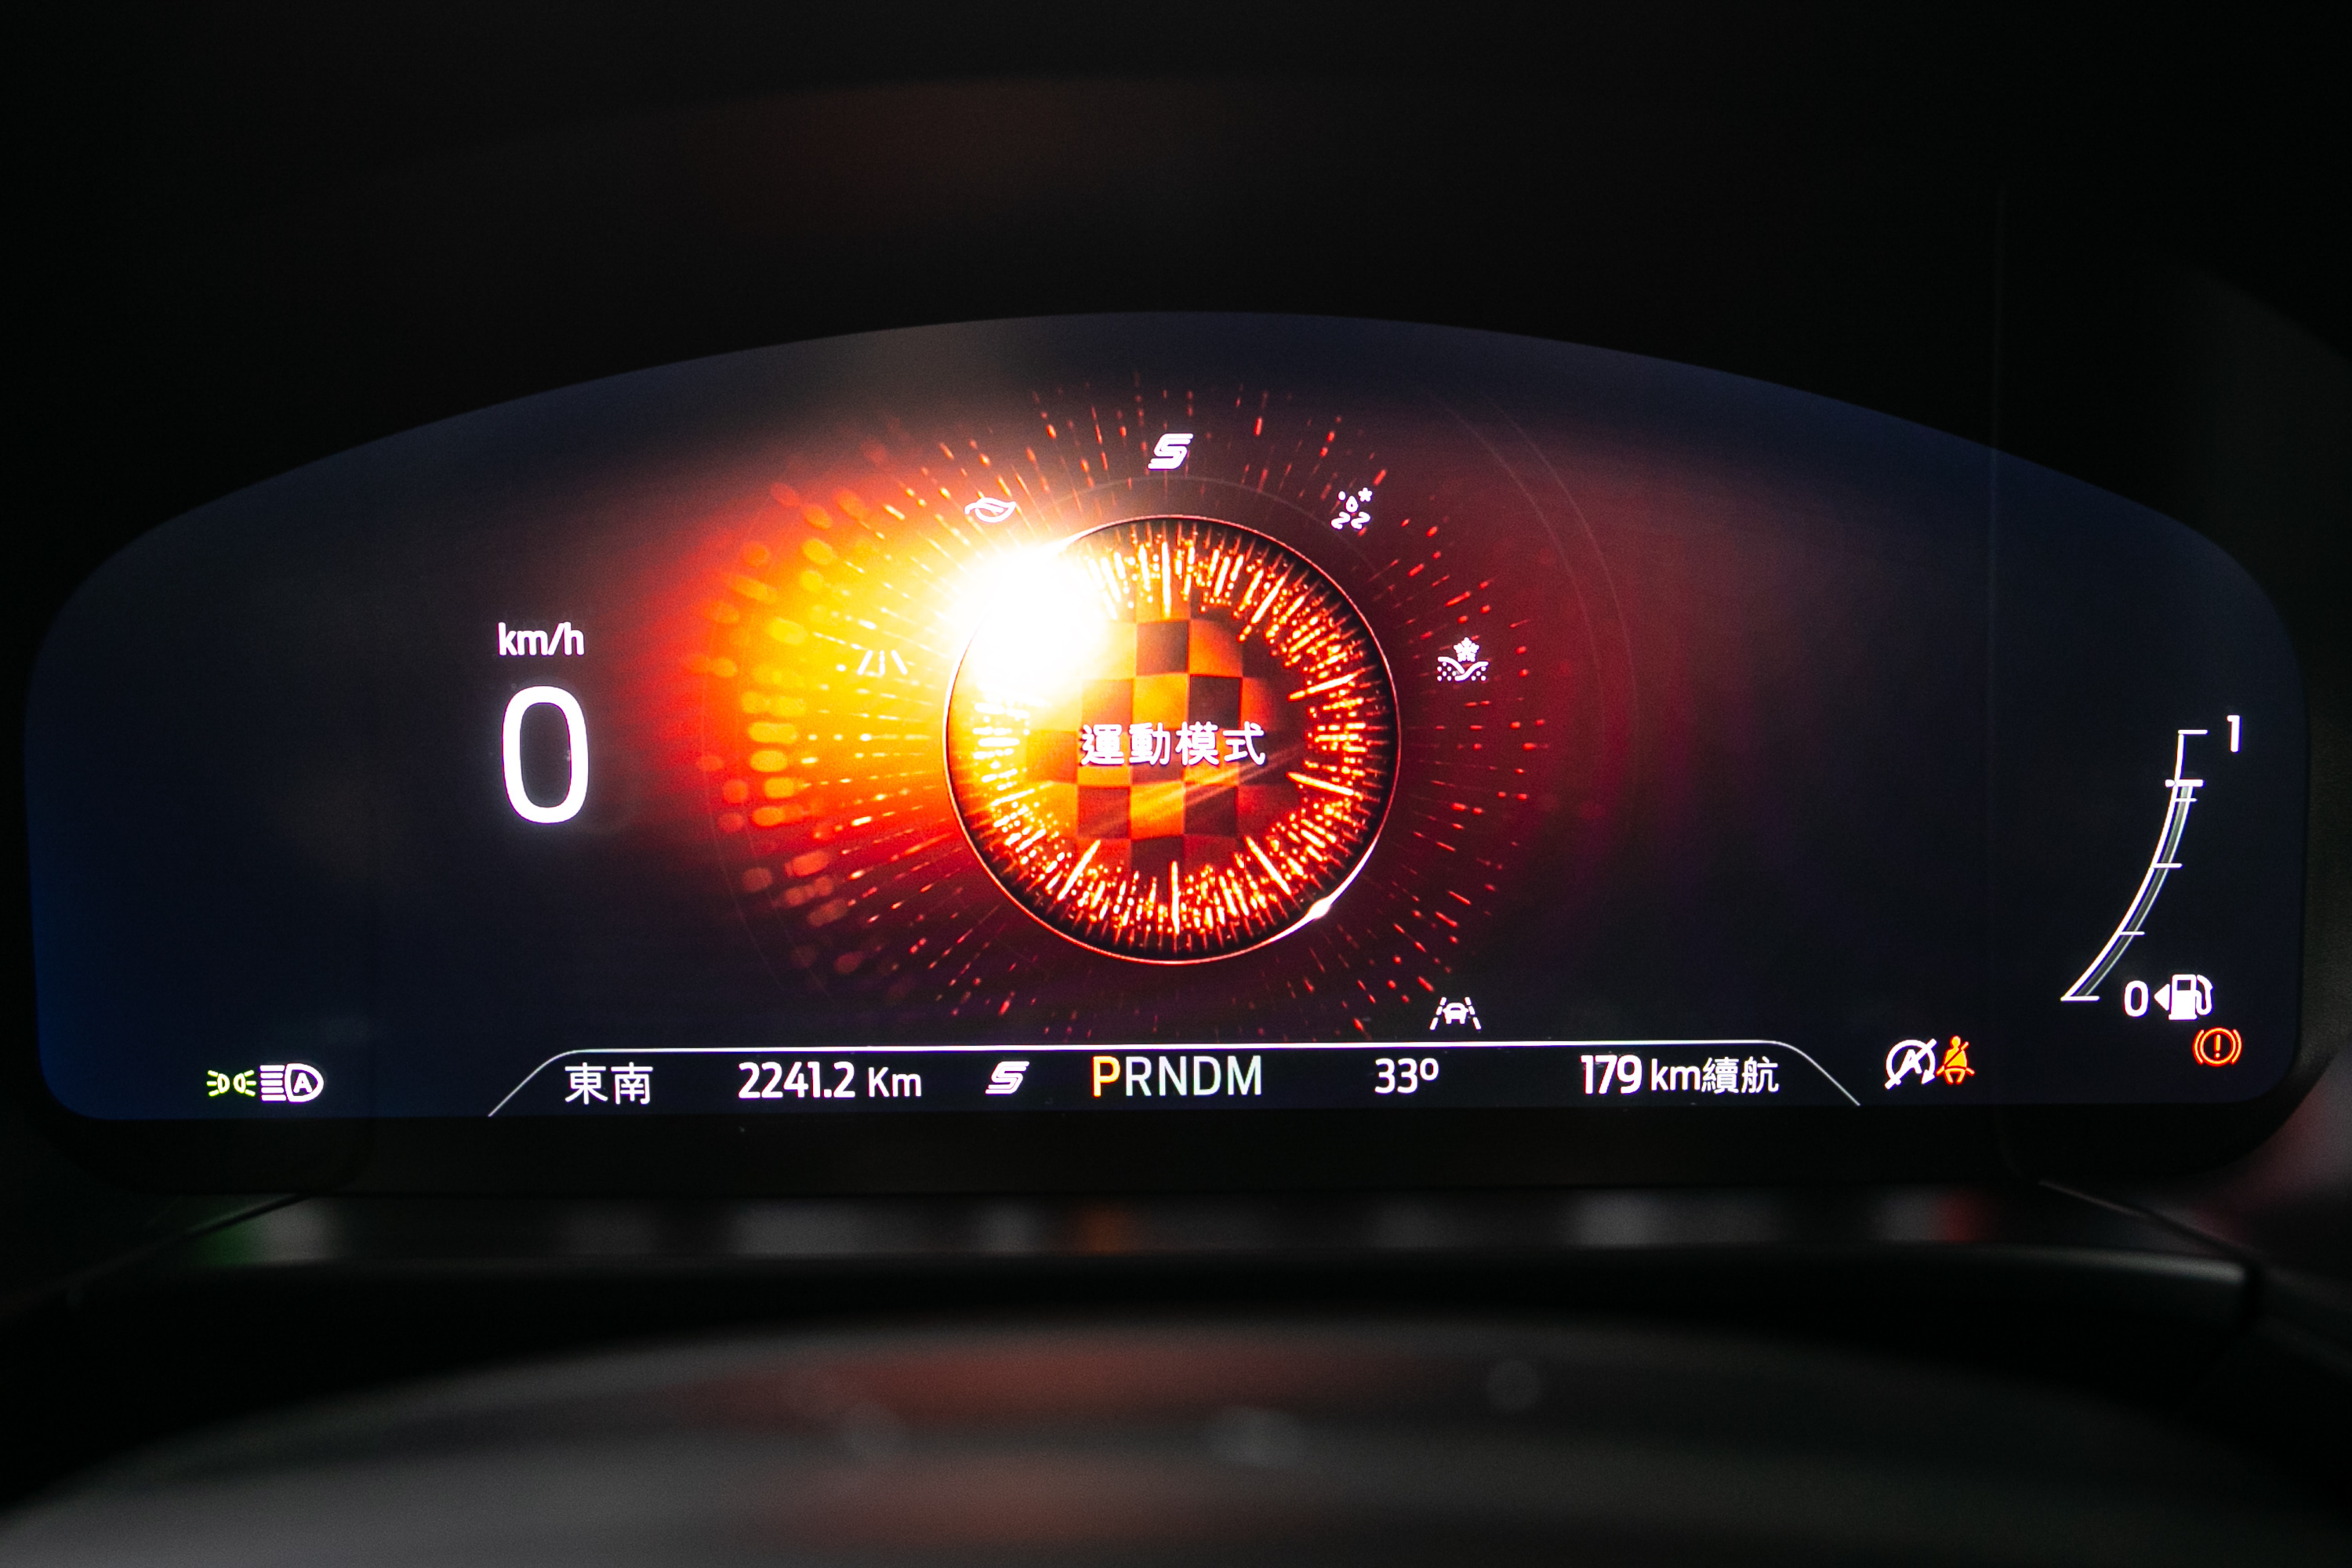 駕駛模式切換時儀表會有相對應的動畫顯示。